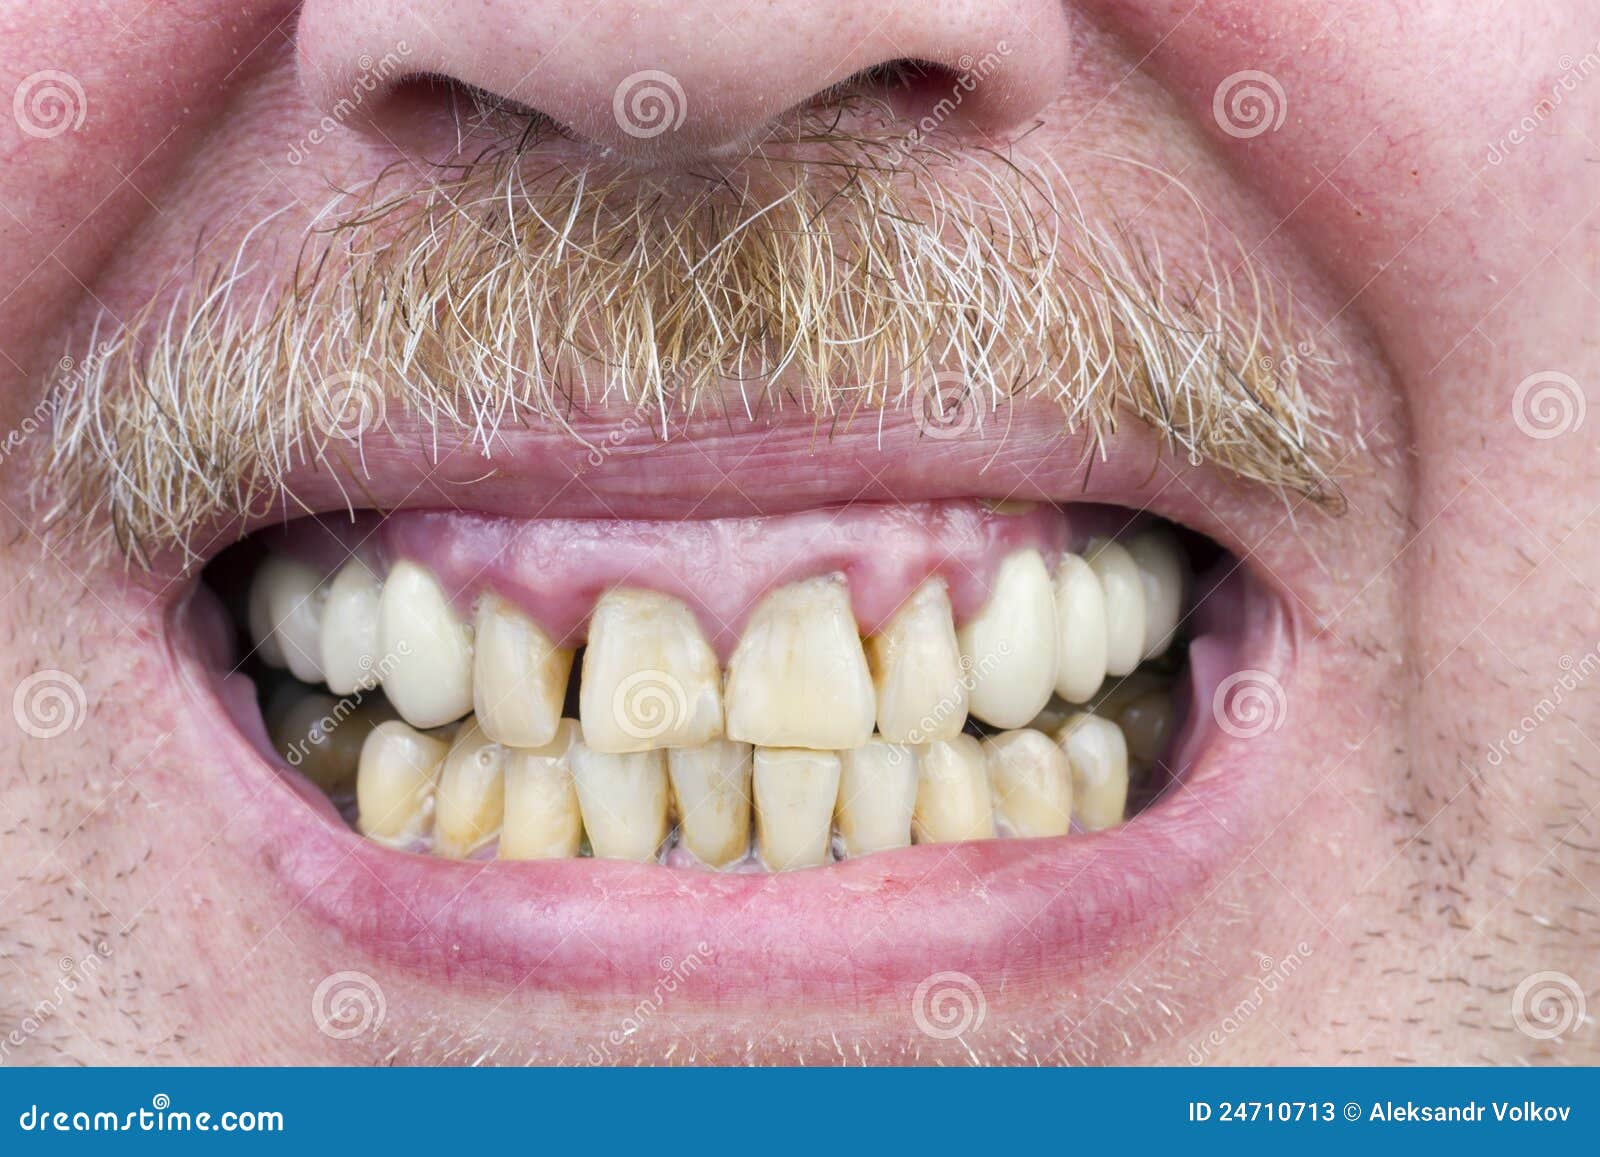 Gelbe zähne haben rothaarige warum Zahnstein beim